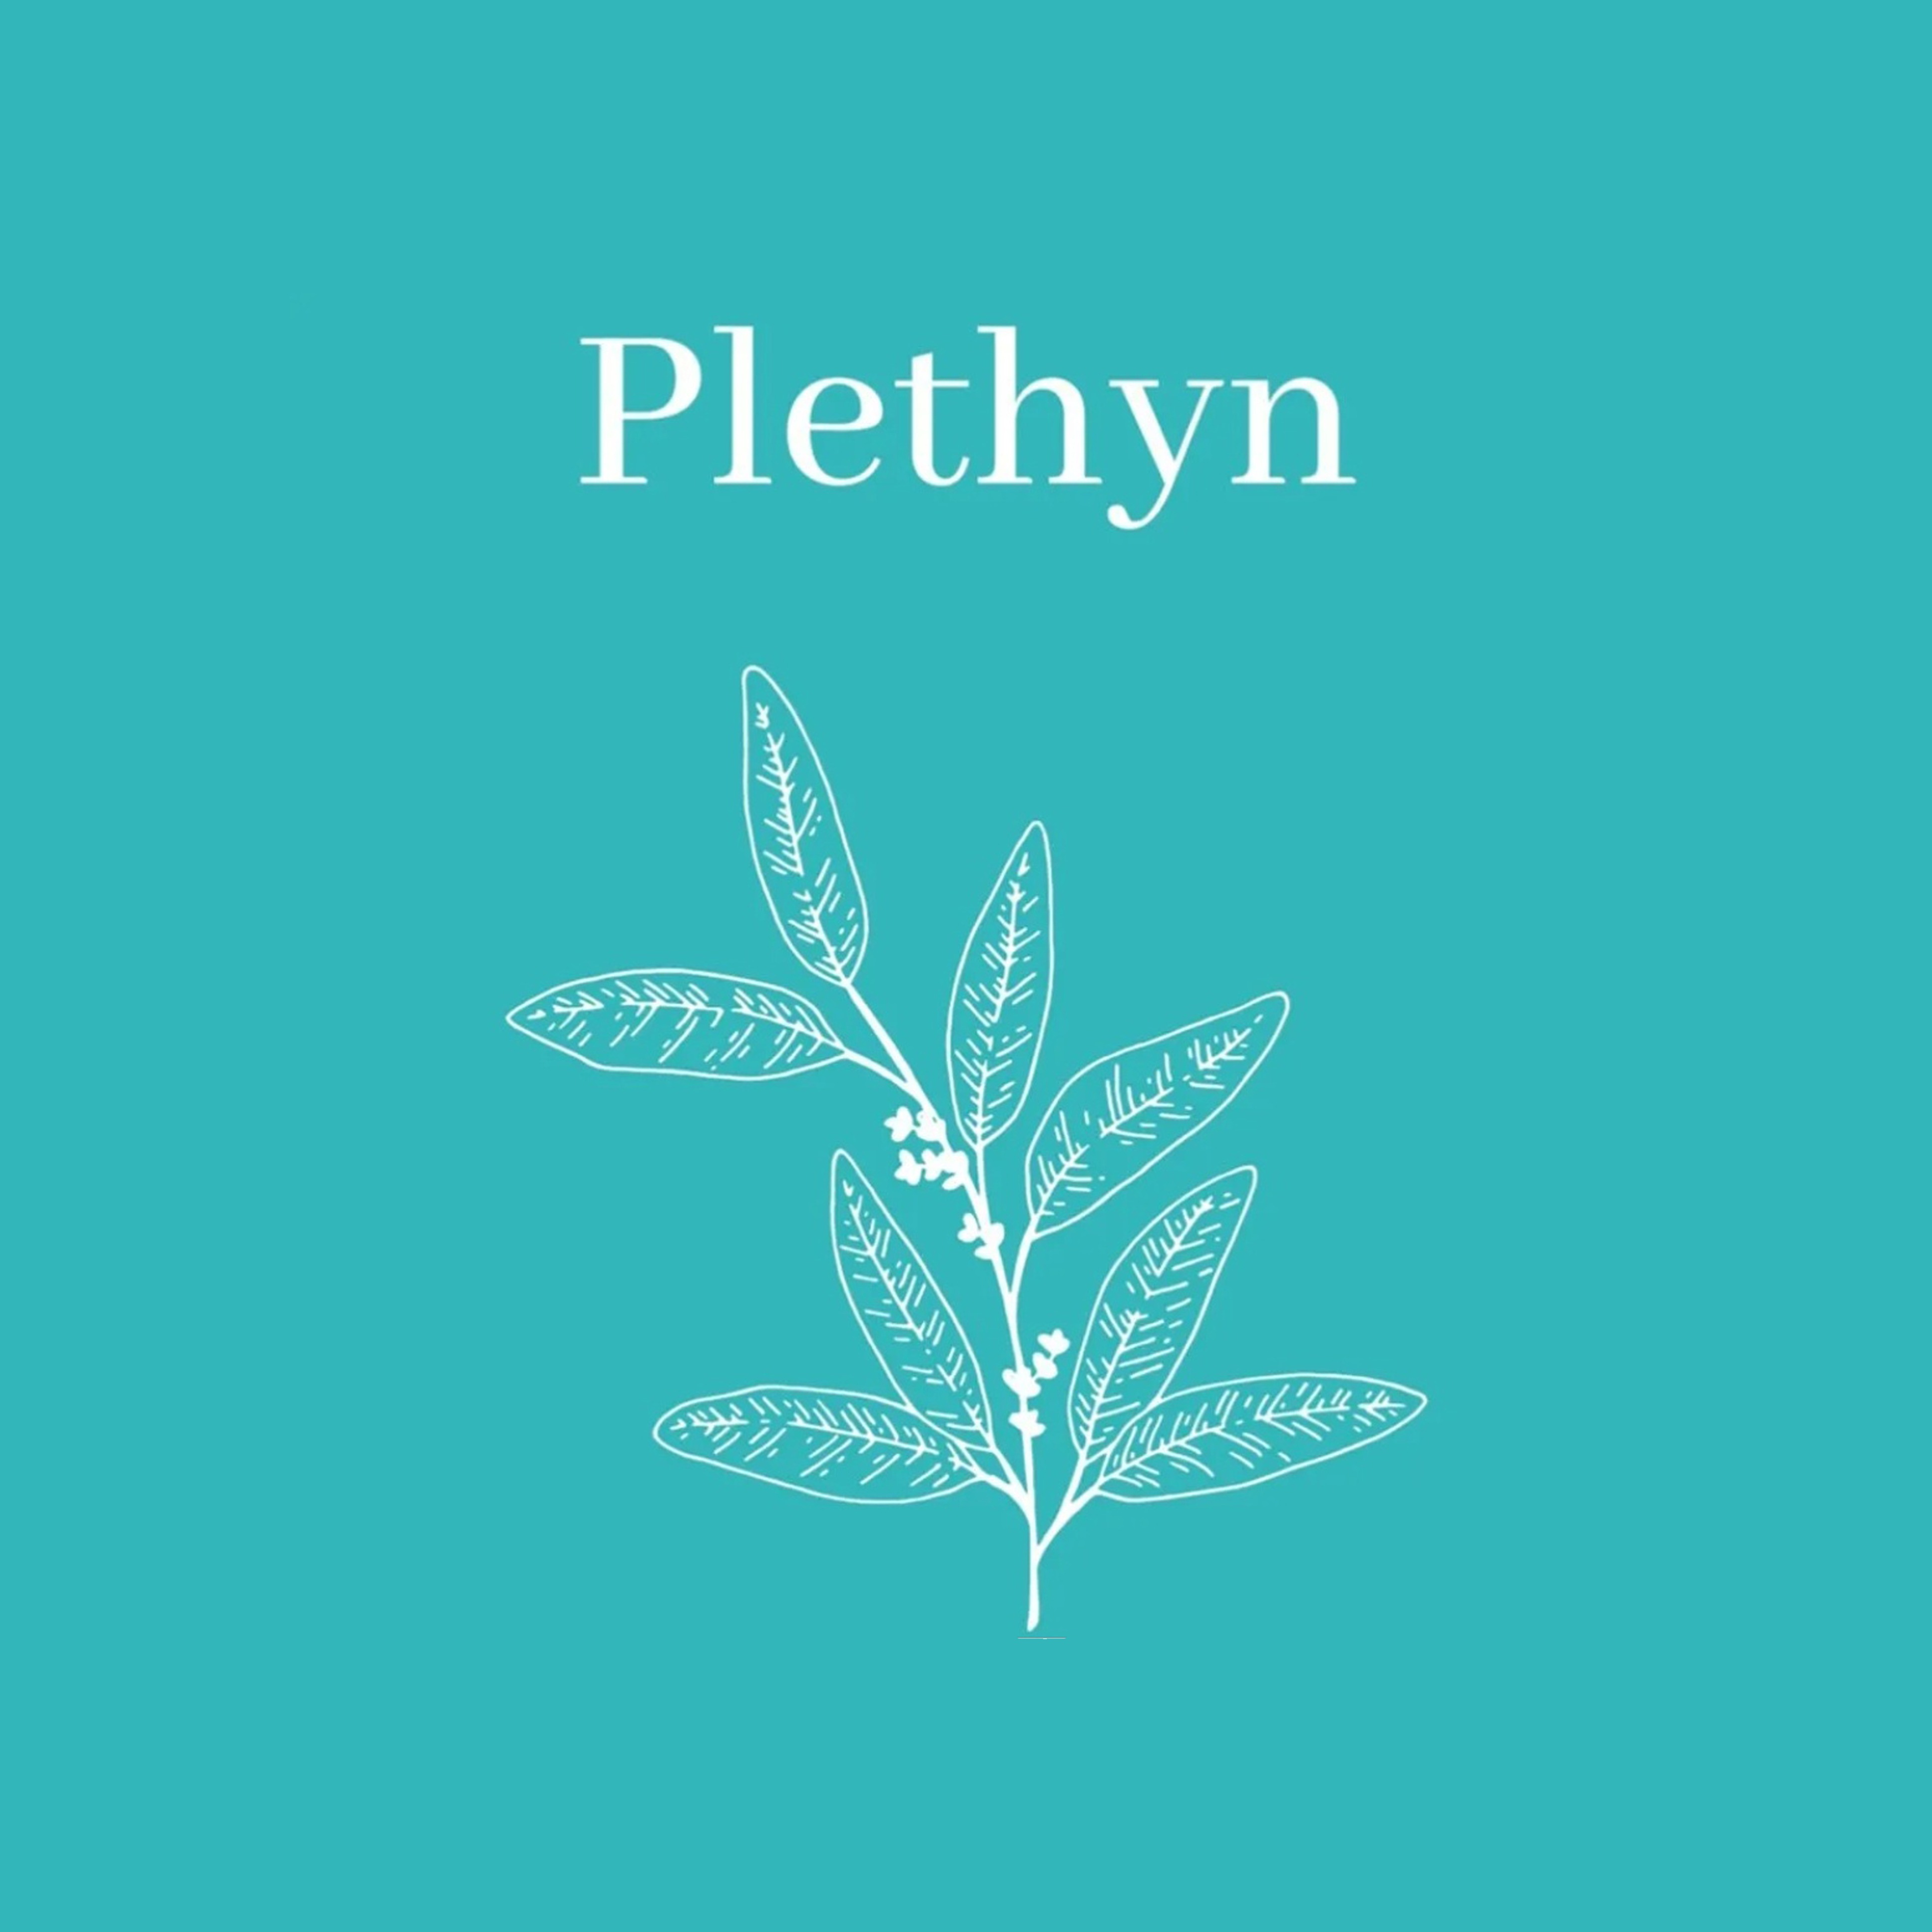 Plethyn